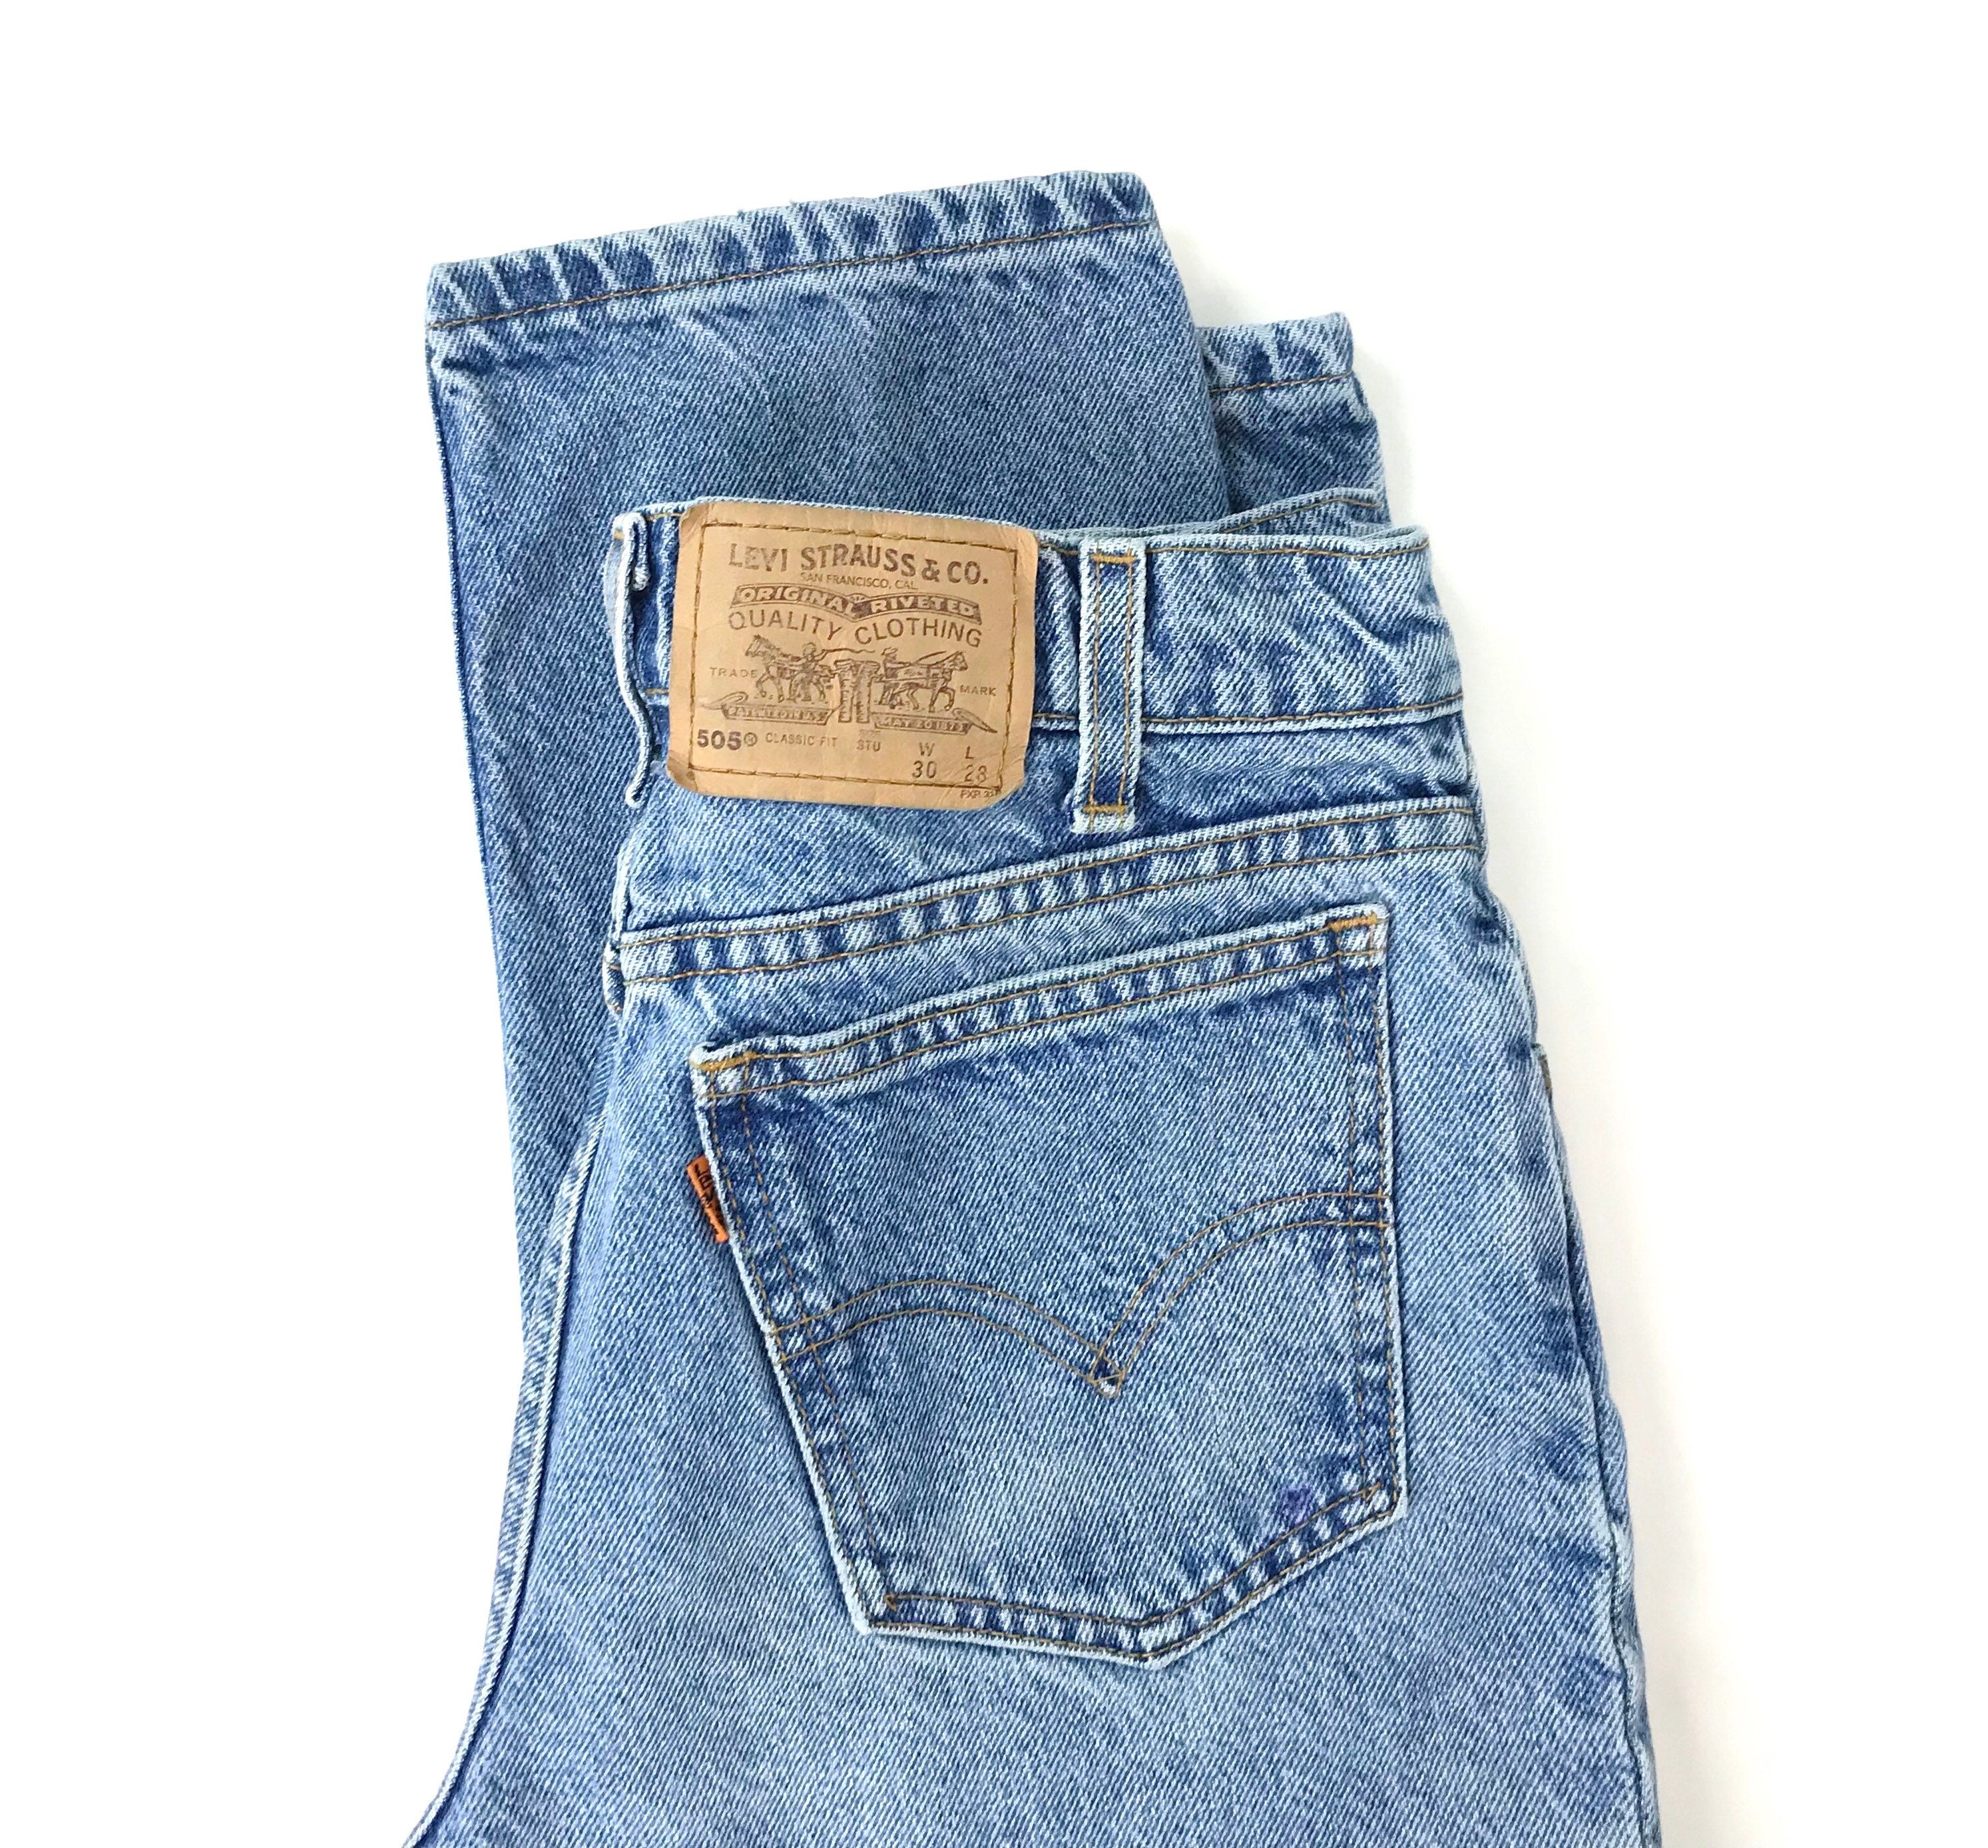 Levi's 505 Student Fit Jeans / Size 27